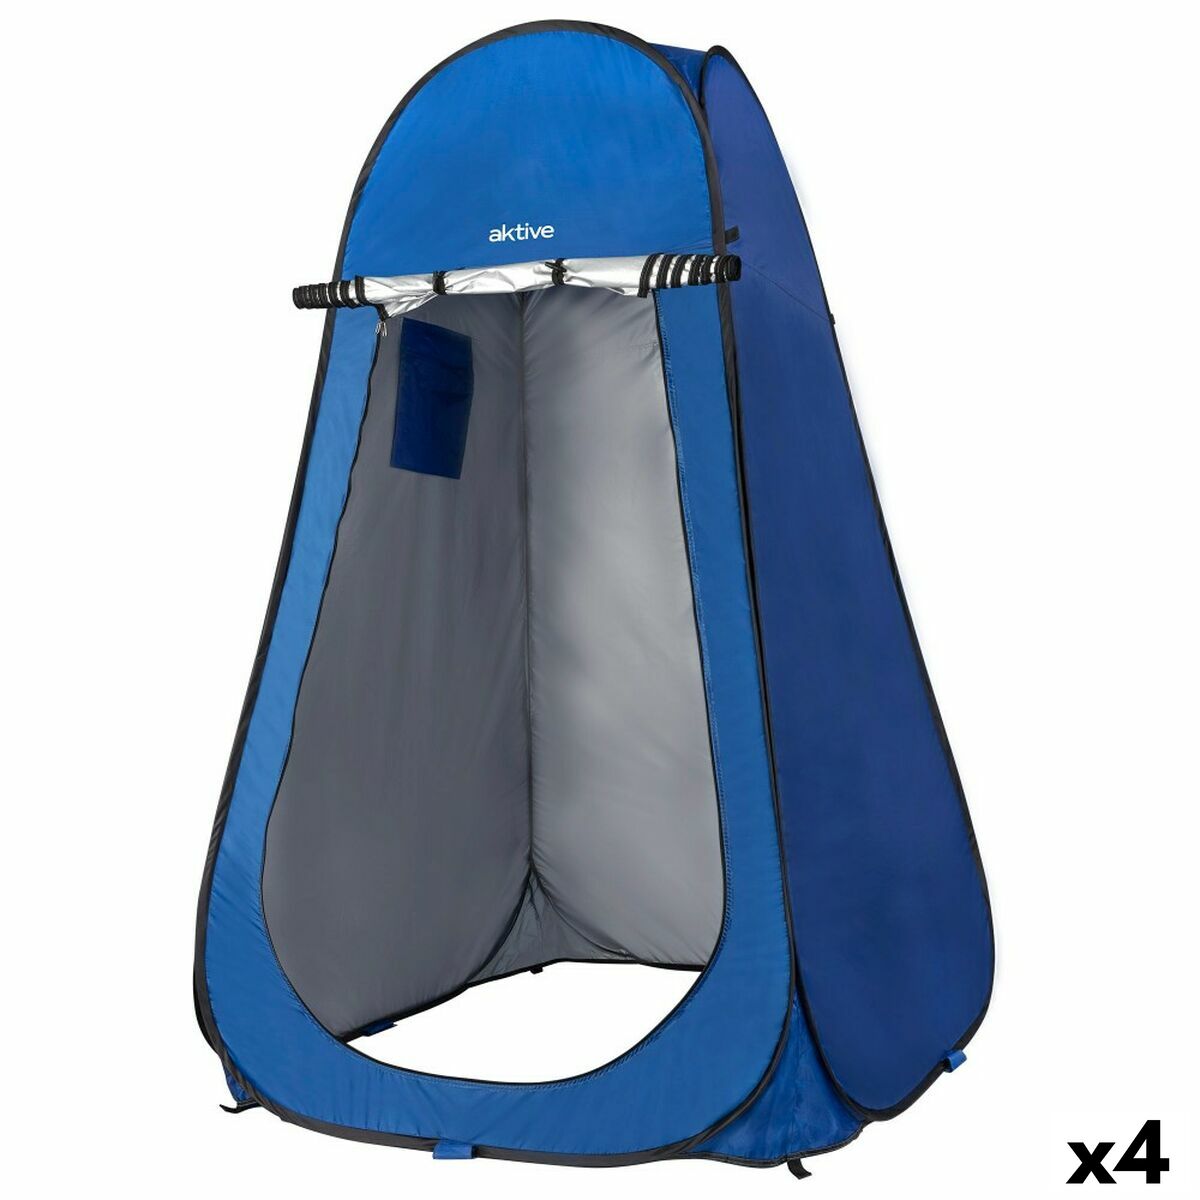 Tent Aktive 120 x 190 x 120 cm (4 Units)